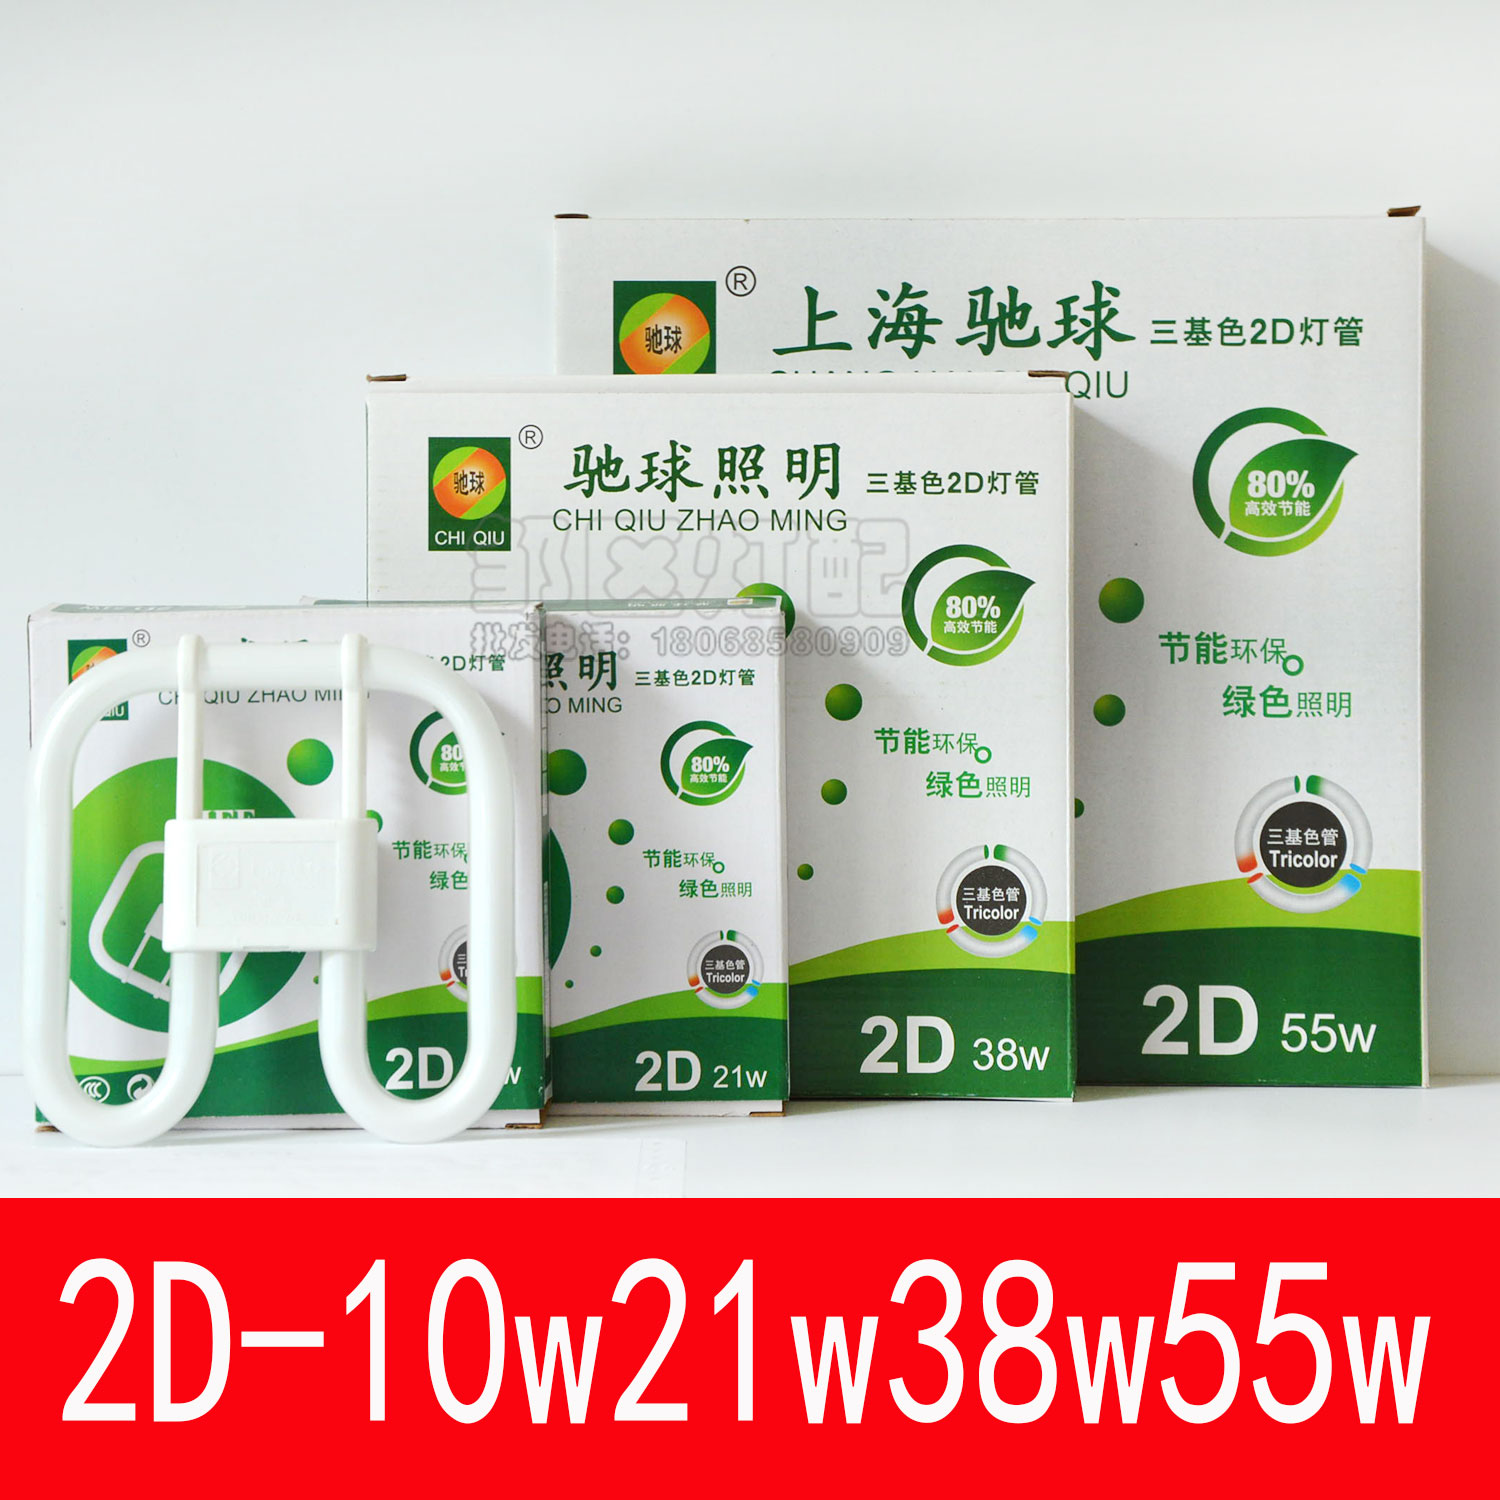 上海驰球三基色YDN-21w-2D形灯管10w38w55w白光2d型灯管源厨卫灯